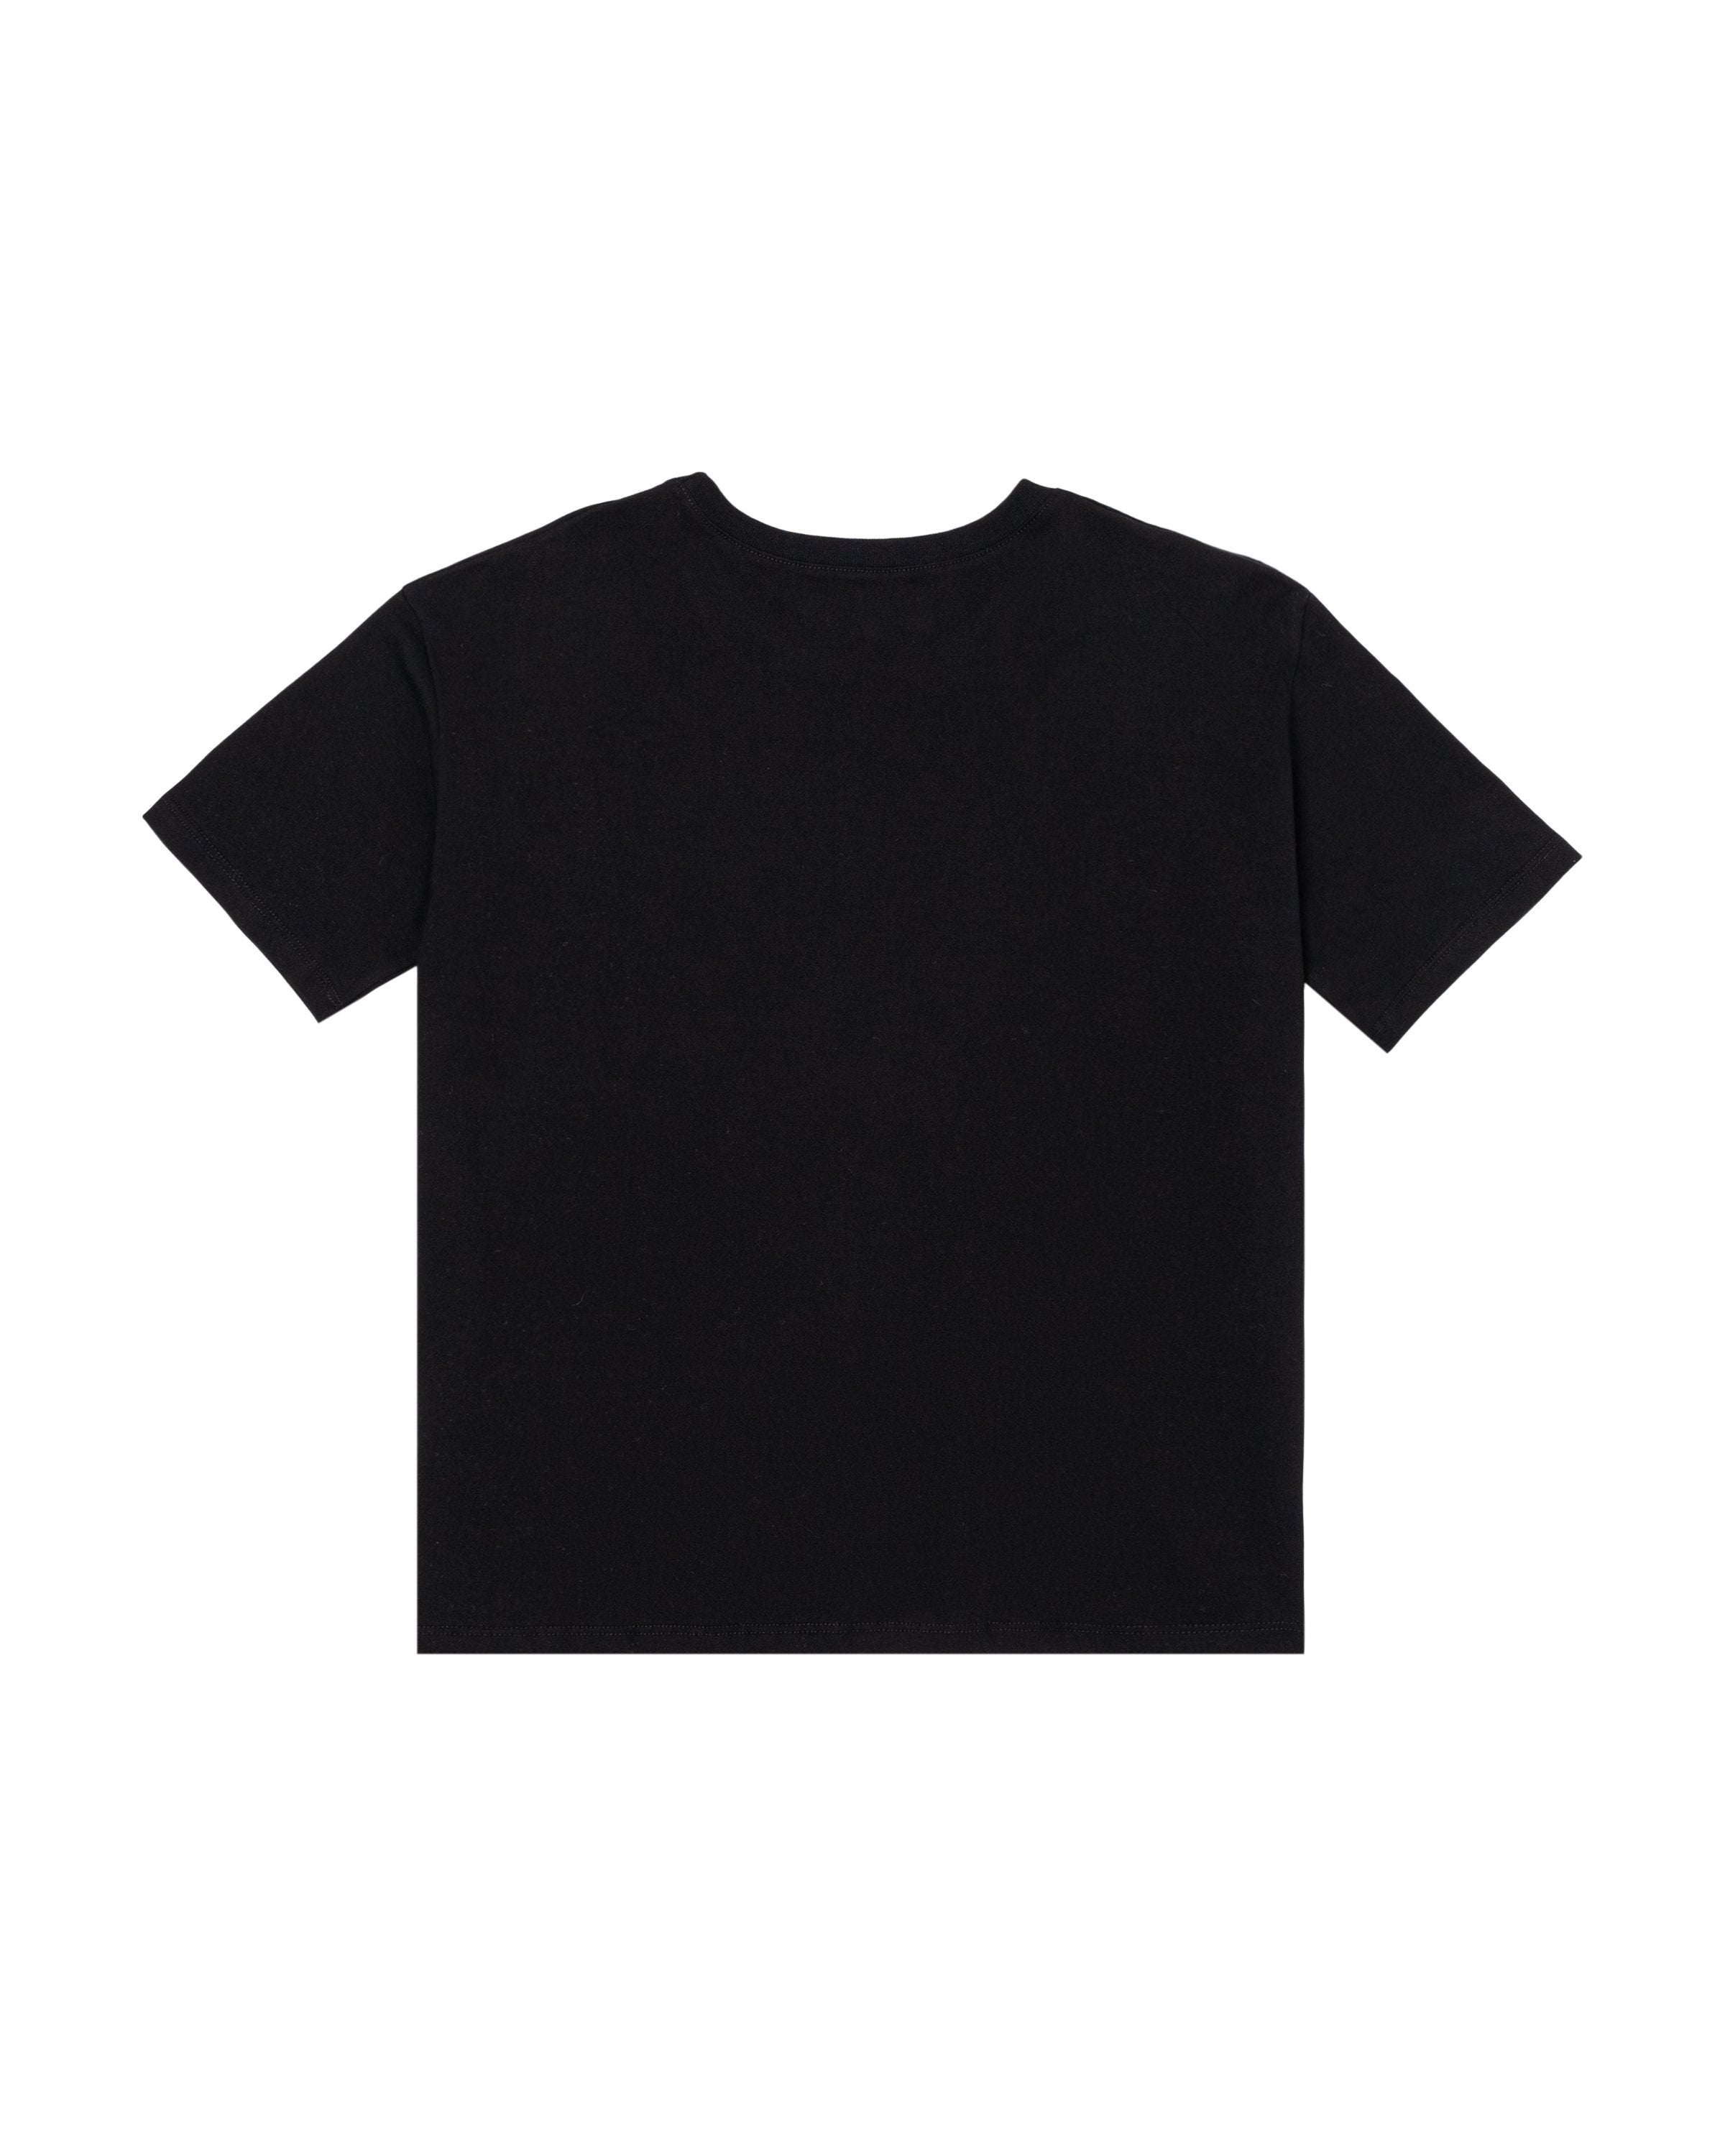 JR-01 Boxy T-Shirt